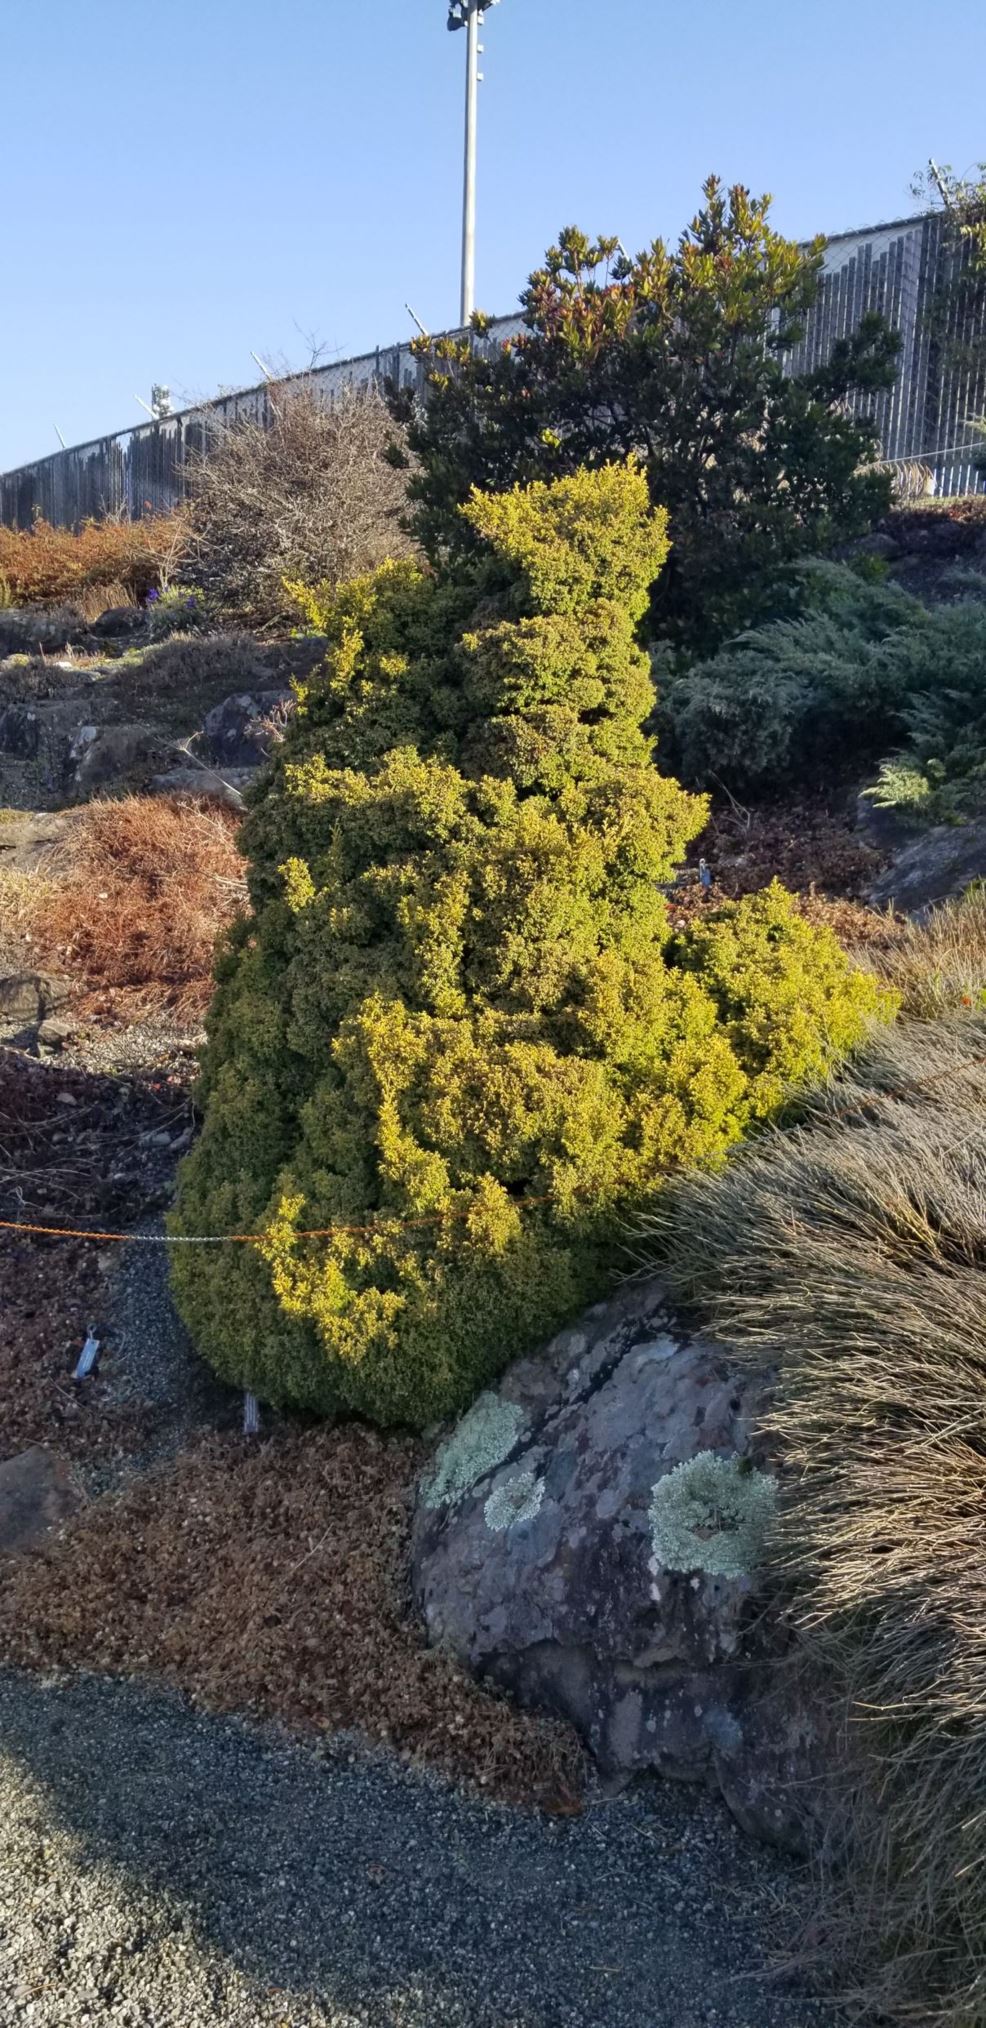 Chamaecyparis pisifera 'Plumosa Juniperoides Aurea' - sawara cypress